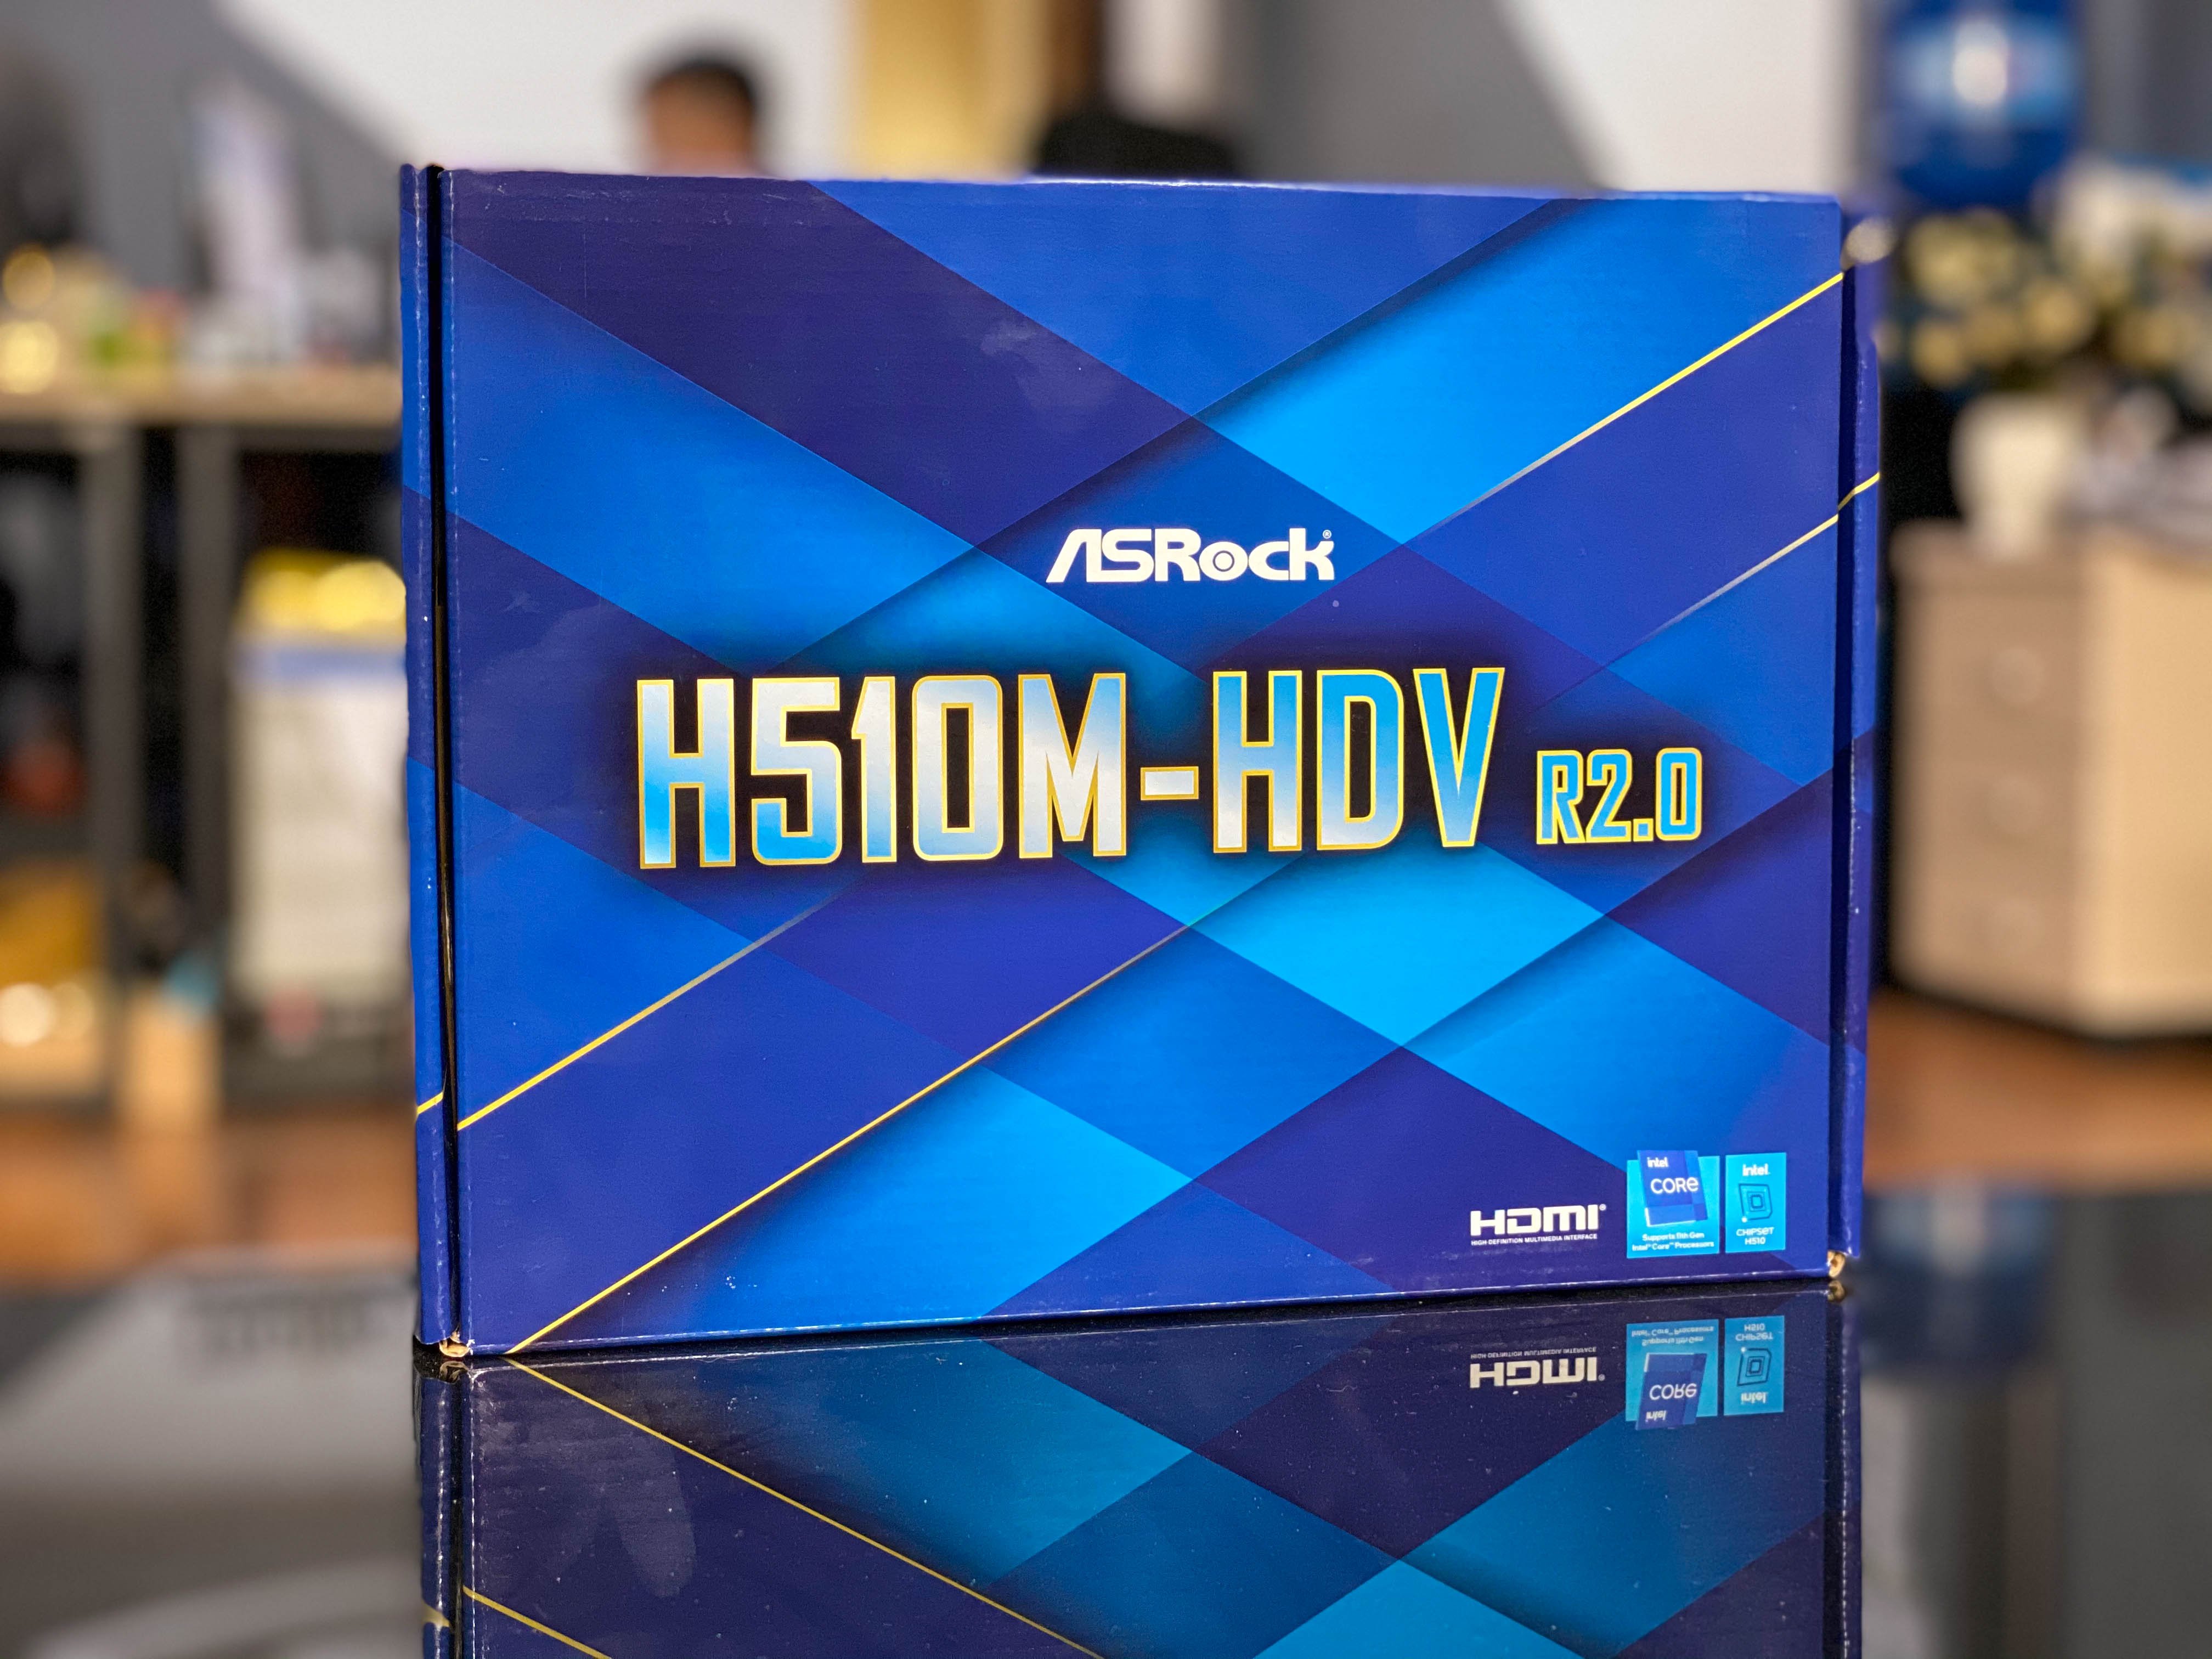 Asrock H510M -HDV cân hết mọi cấu hình giá rẻ - tầm trung